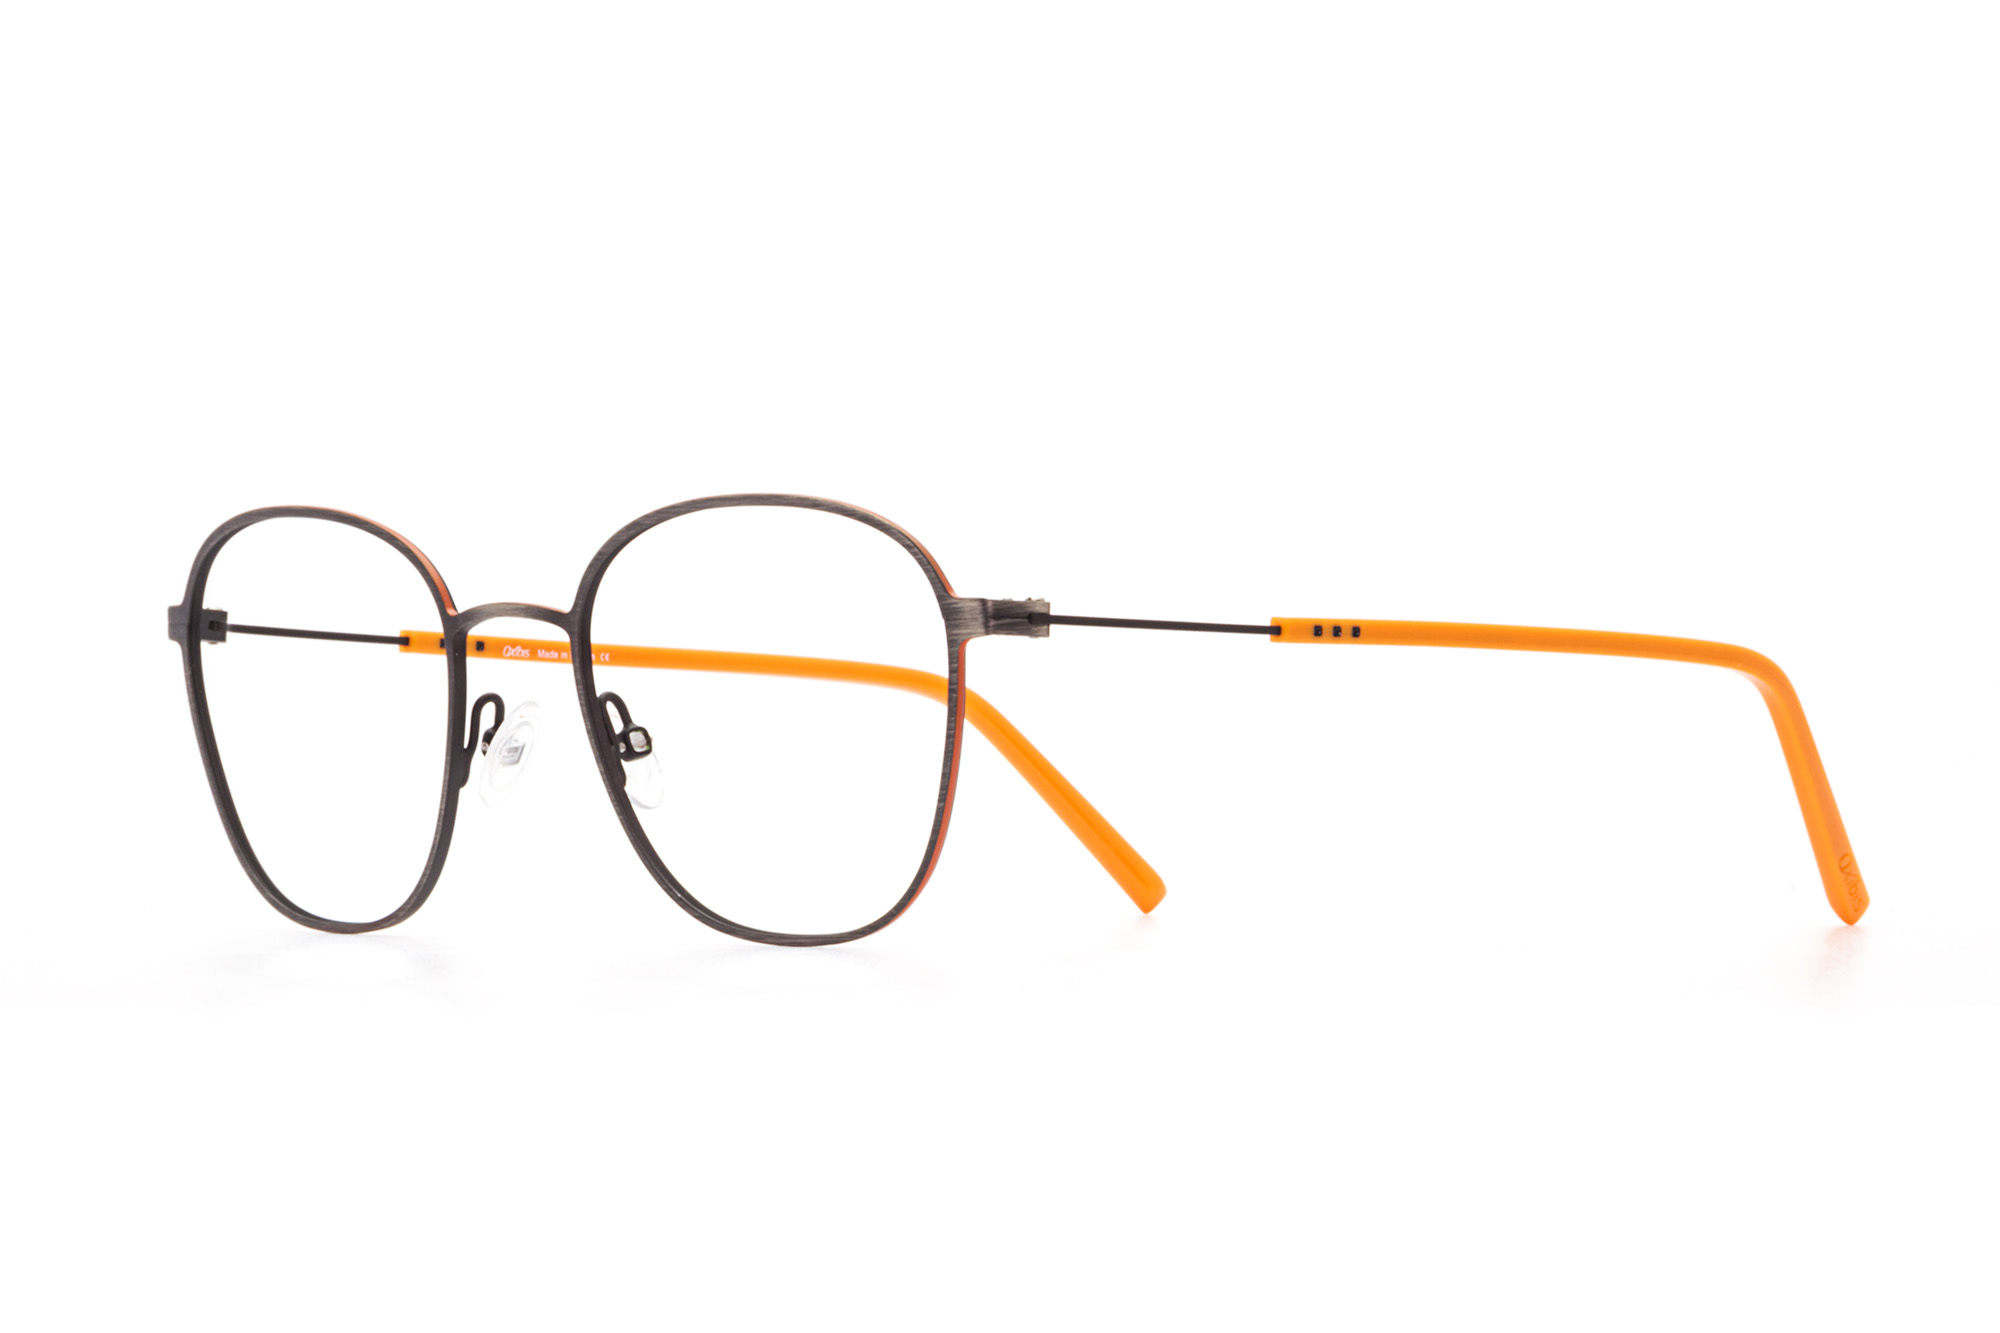 Oxibis Boost 2 BO2C3 50 orta ekartman gümüş ve turuncu renkli dikdörtgen ve yuvarlak model numaralı erkek optik gözlük çerçevesi